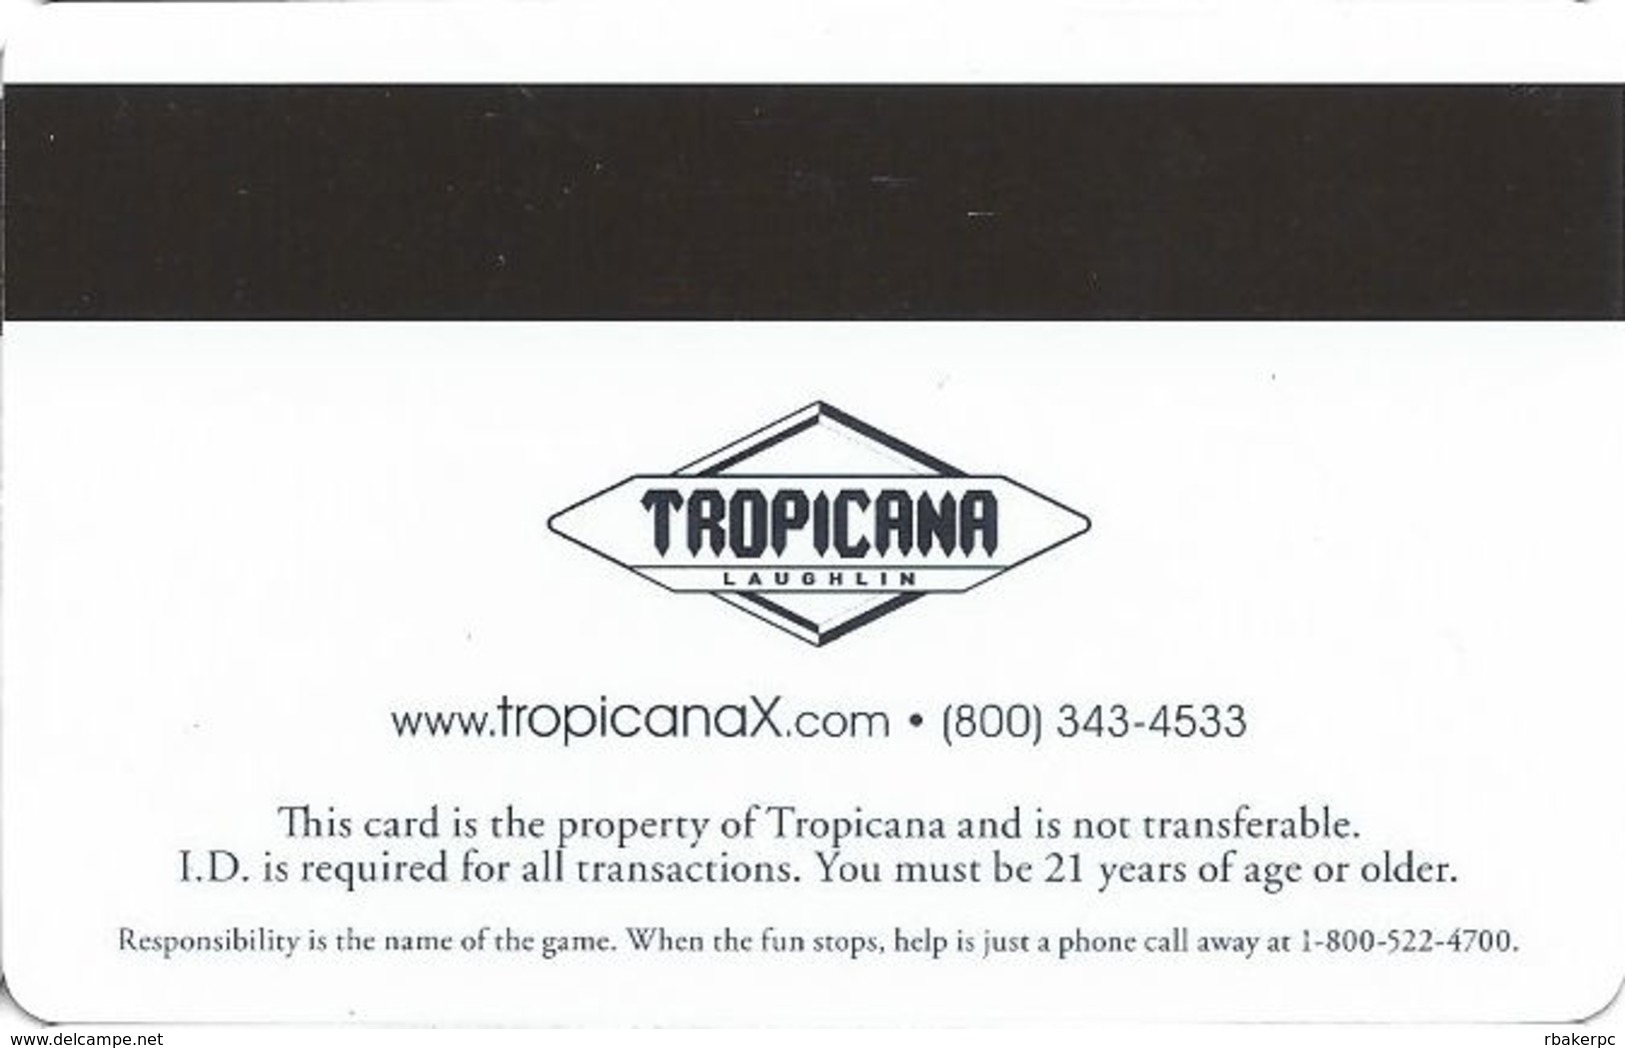 Tropicana Express Casino - Laughlin NV - Slot Card - Casino Cards